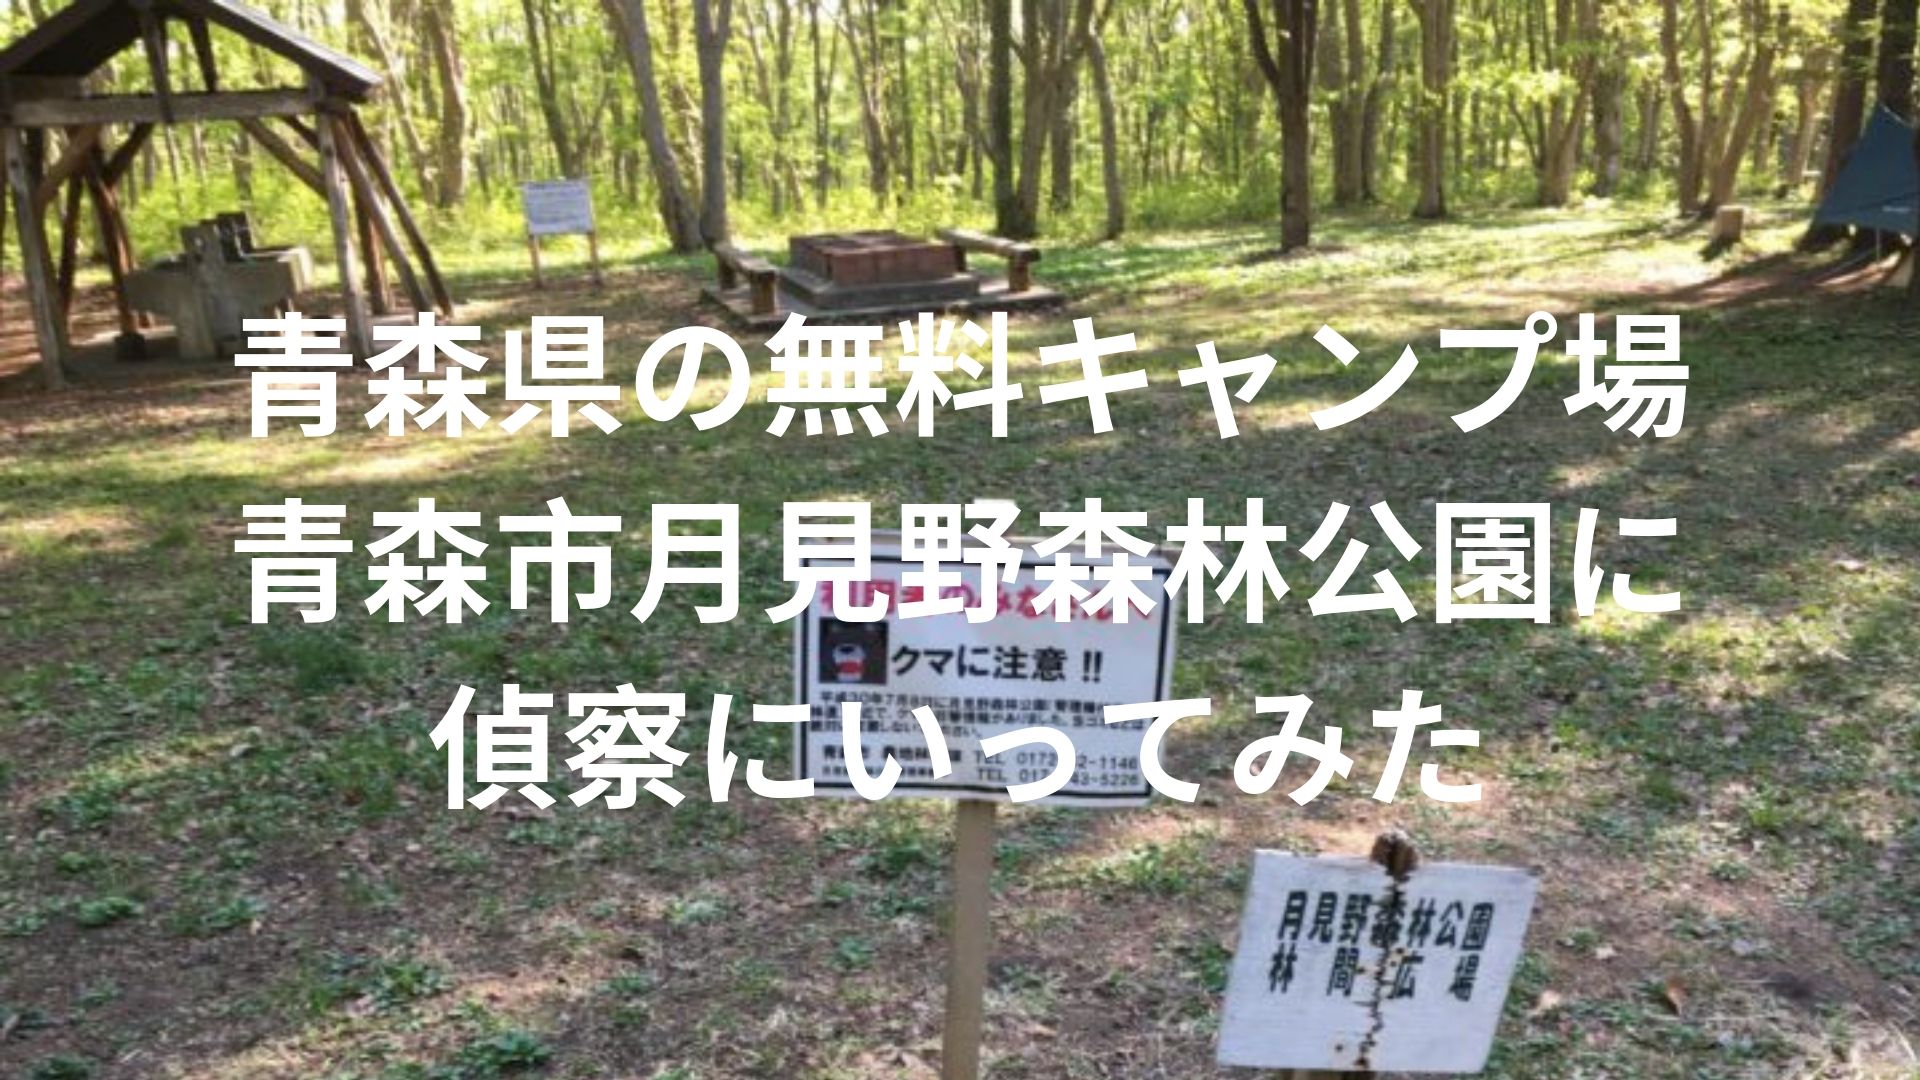 青森県の無料キャンプ場偵察その3 青森市月見野森林公園にいってみた 車やキャンプや車 ファッションに30からハマってます